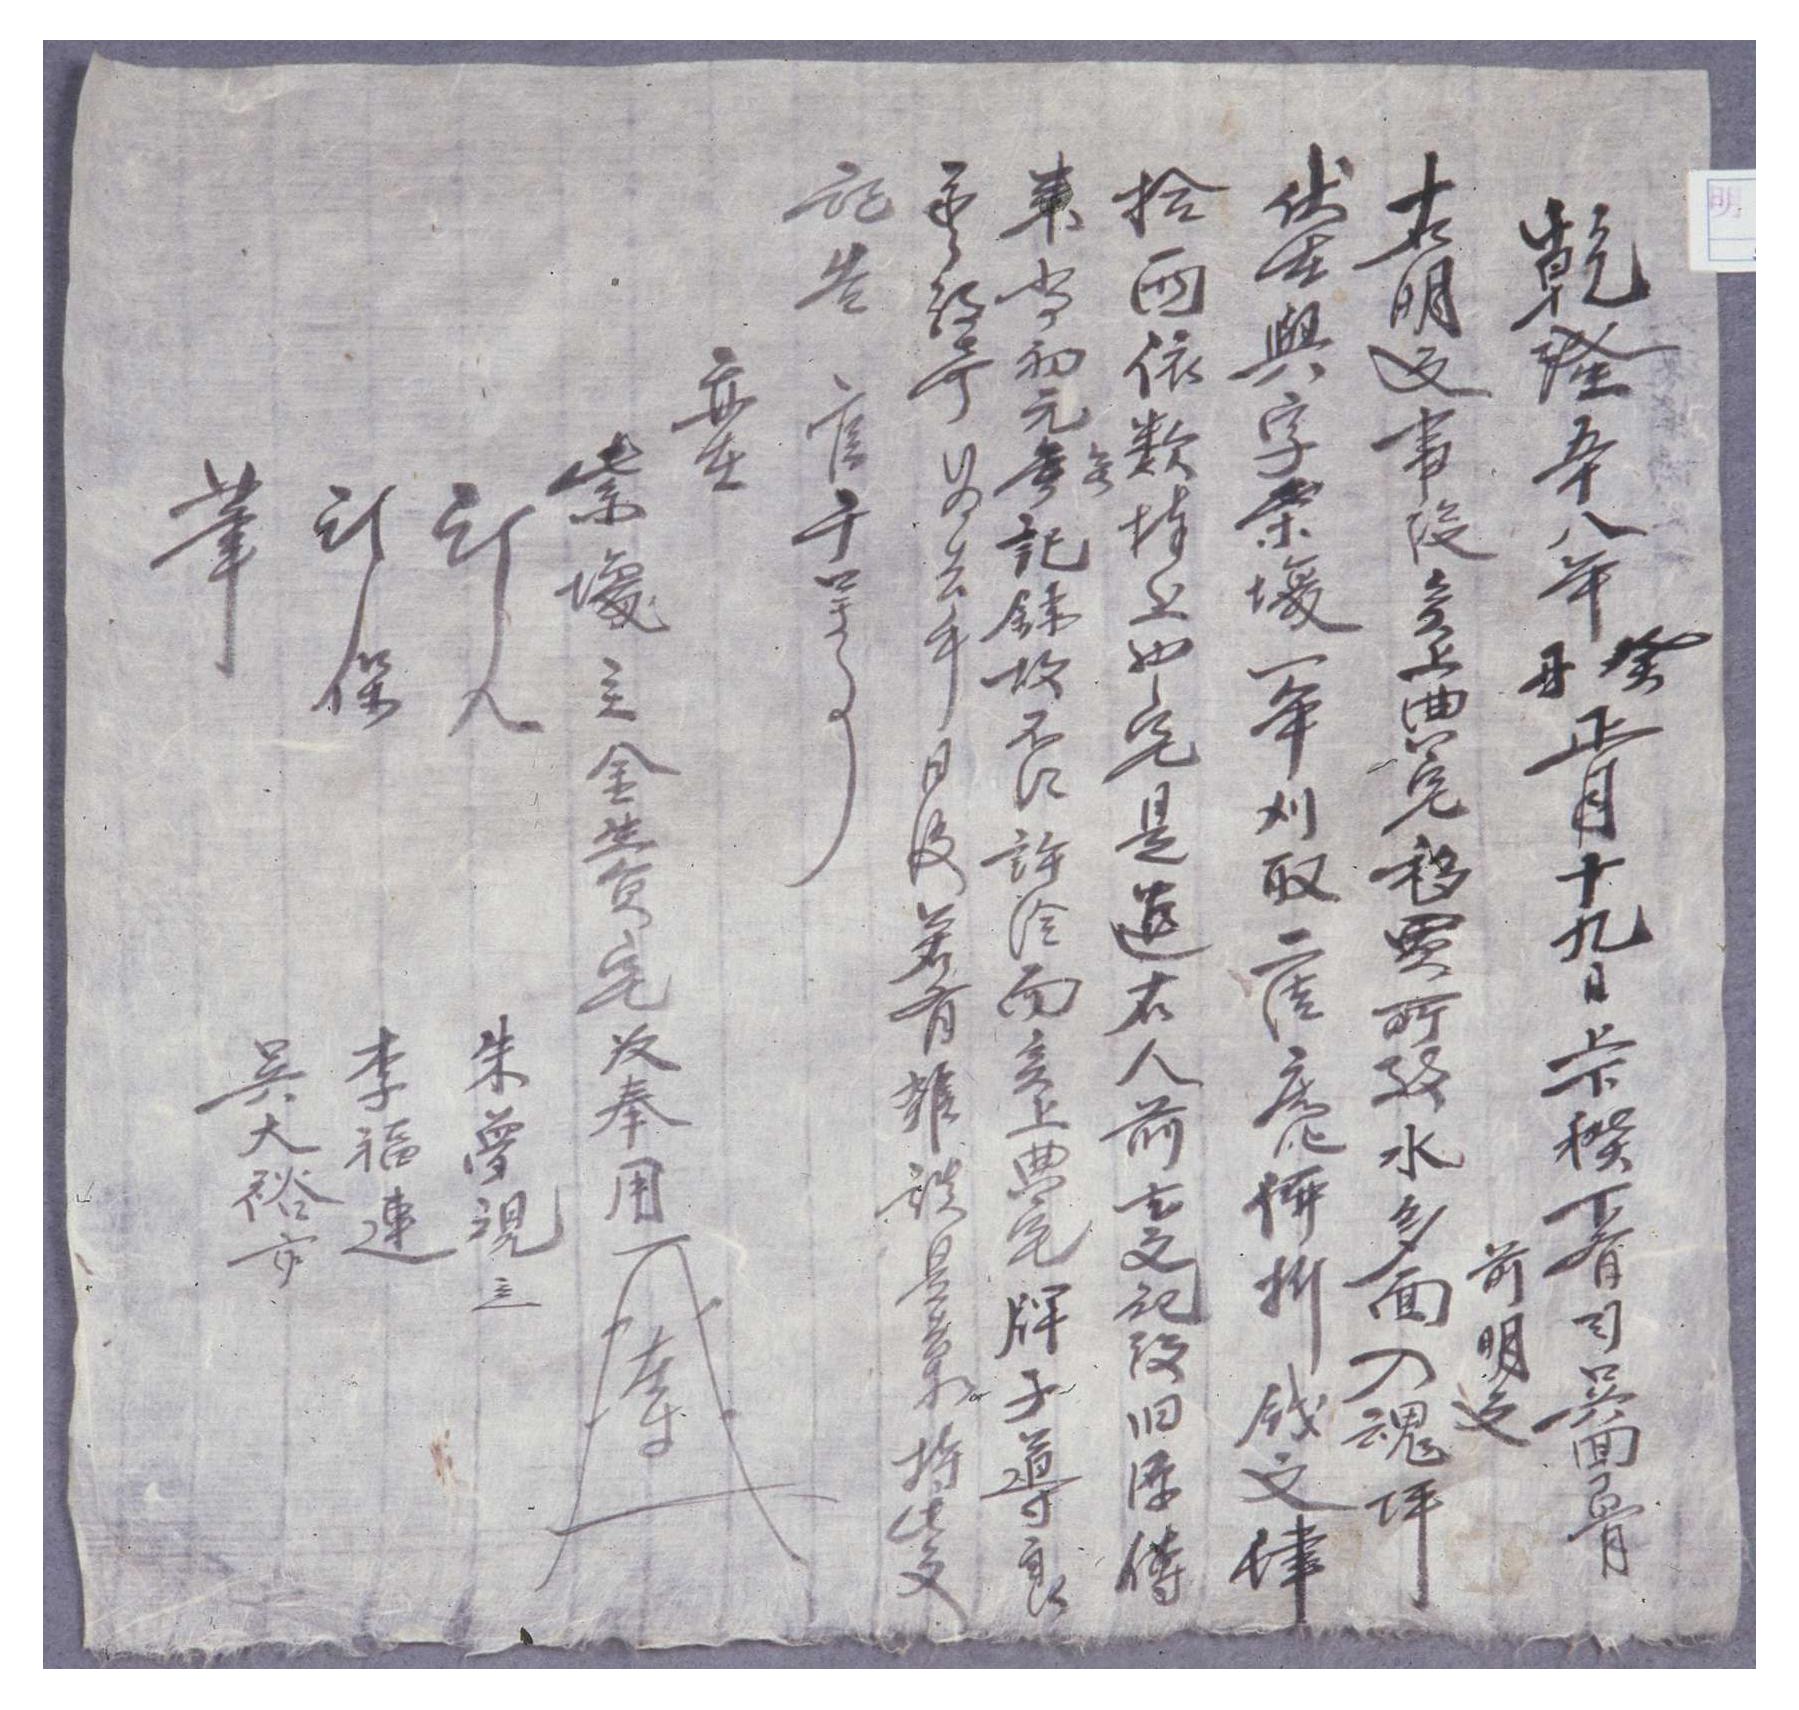 1563년 정병 김한석이 임하댁에 토지를 방매한 명문 